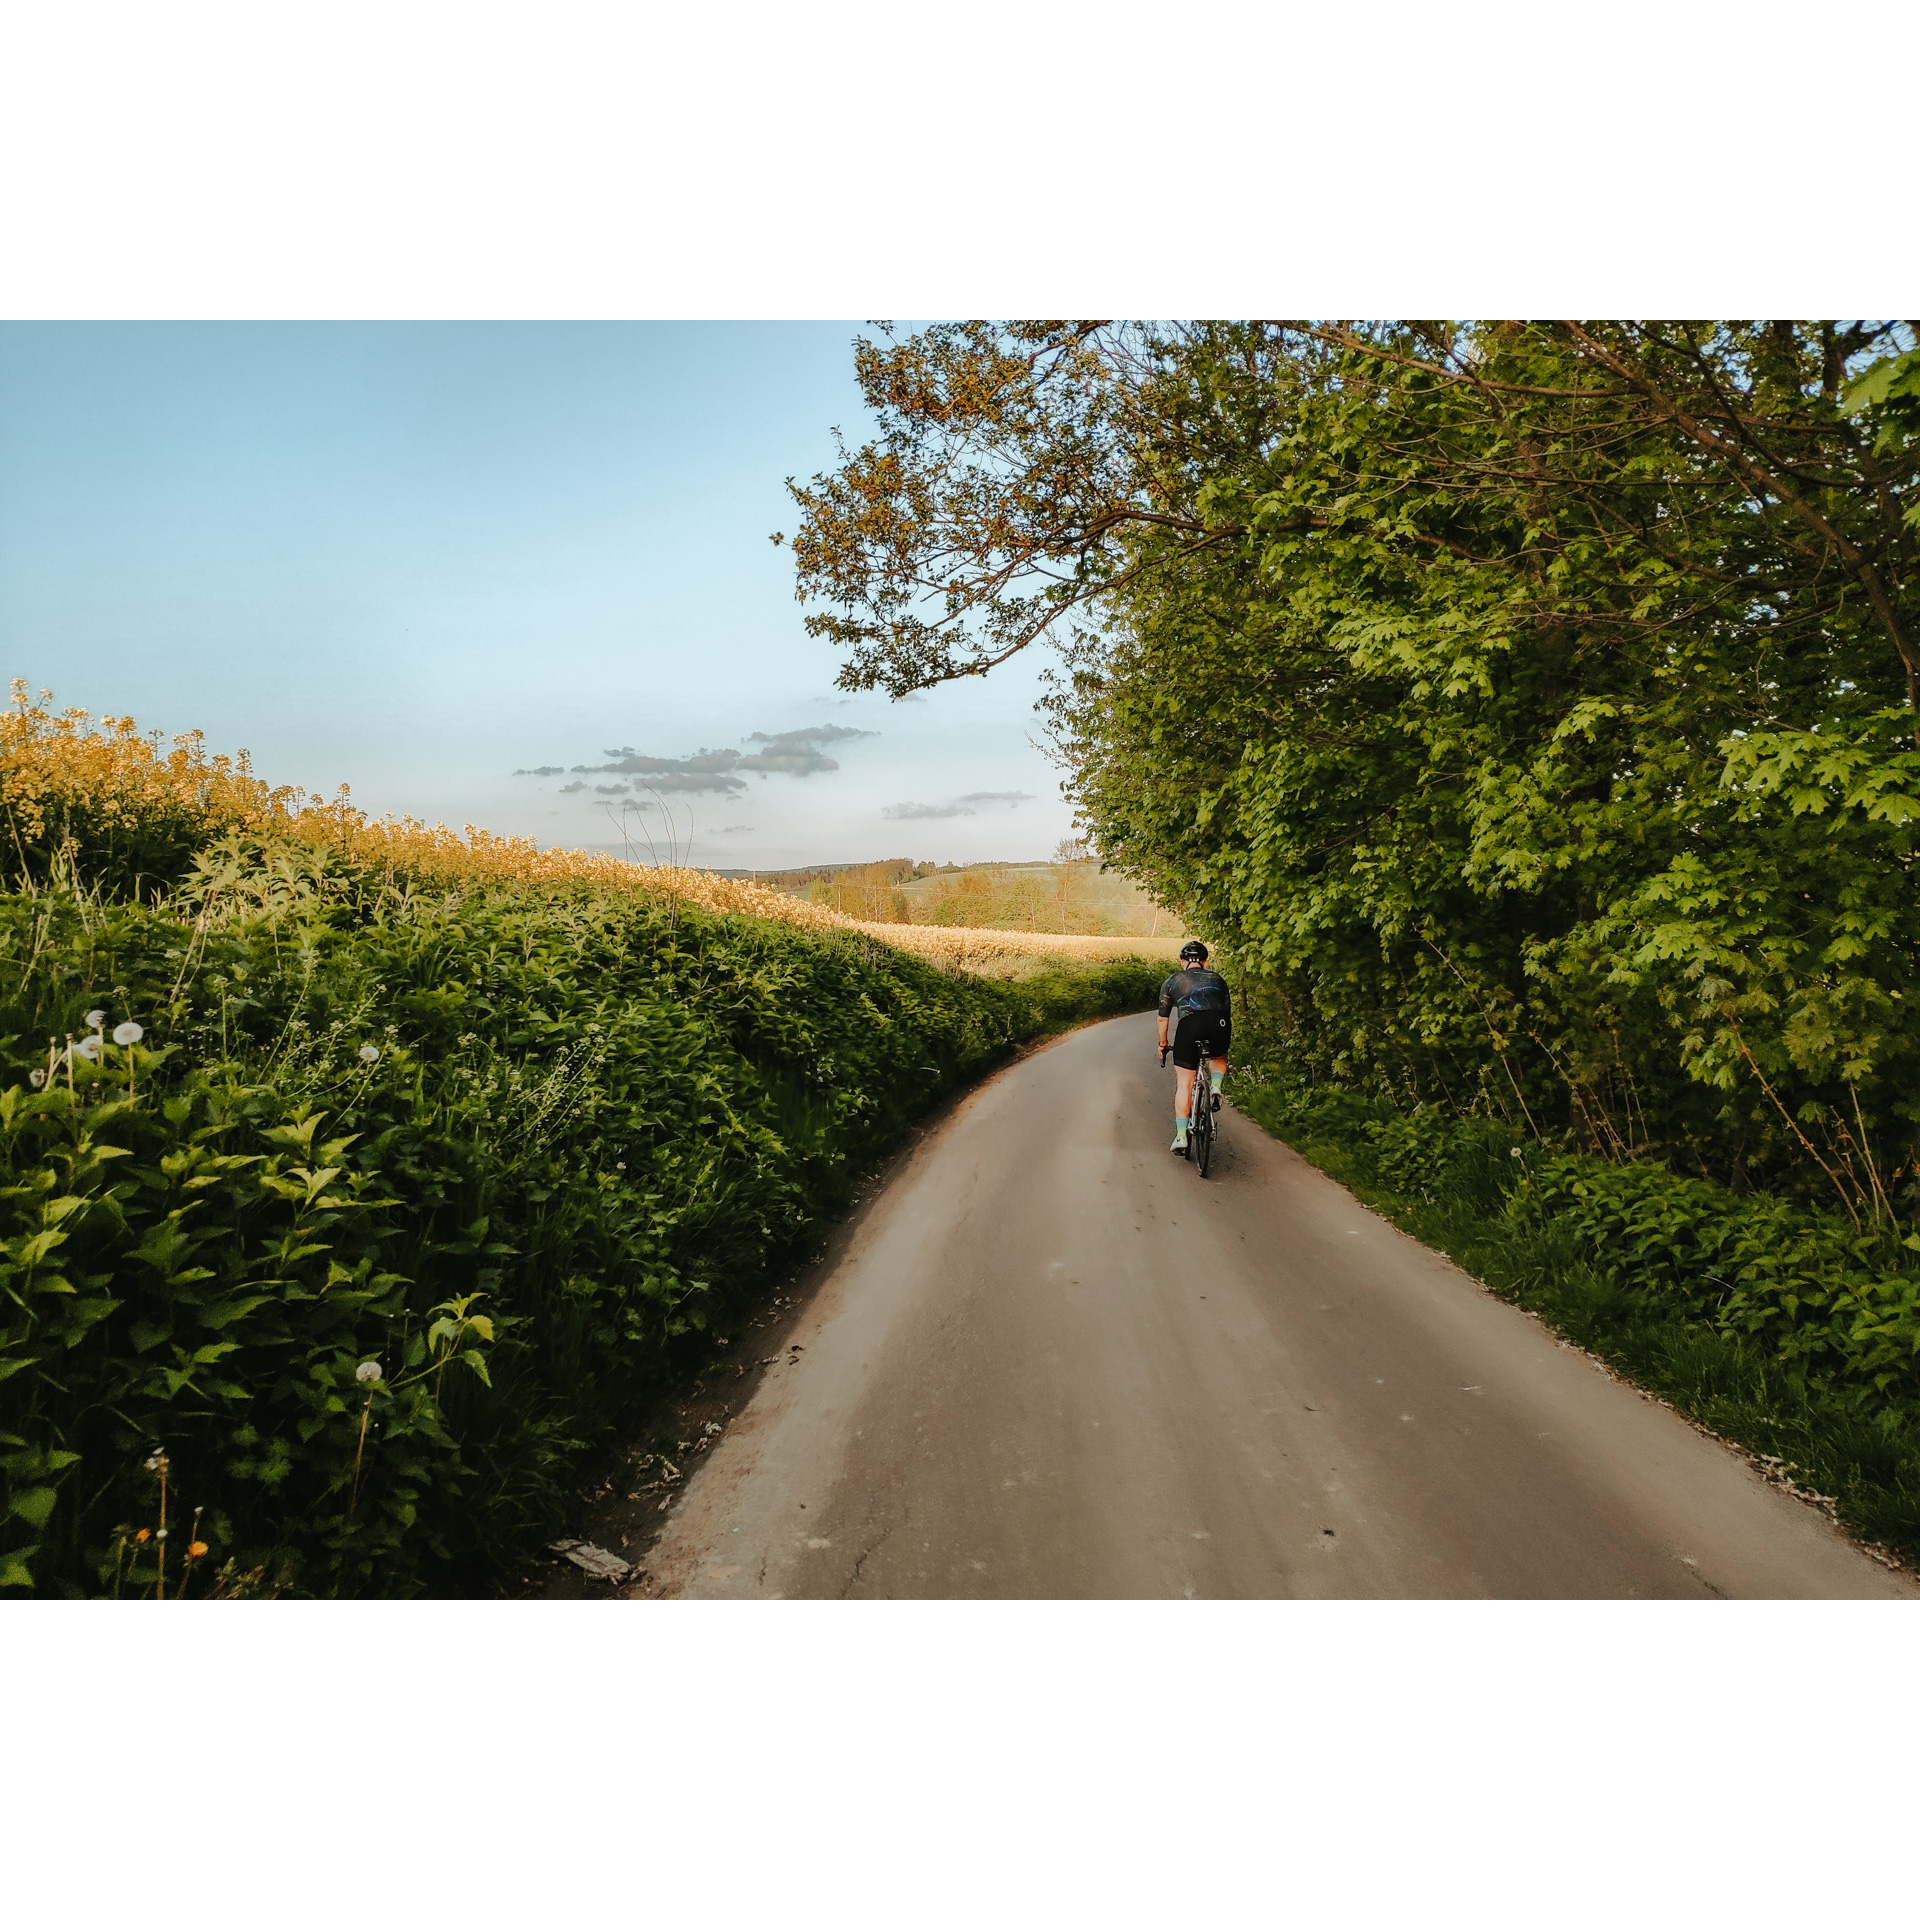 Rowerzysta w grafitowym stroju kolarskim jadący drogą asfaltową, z prawej strony zielone drzewa, z lewej strony wysoka, zielona roślinność na polach